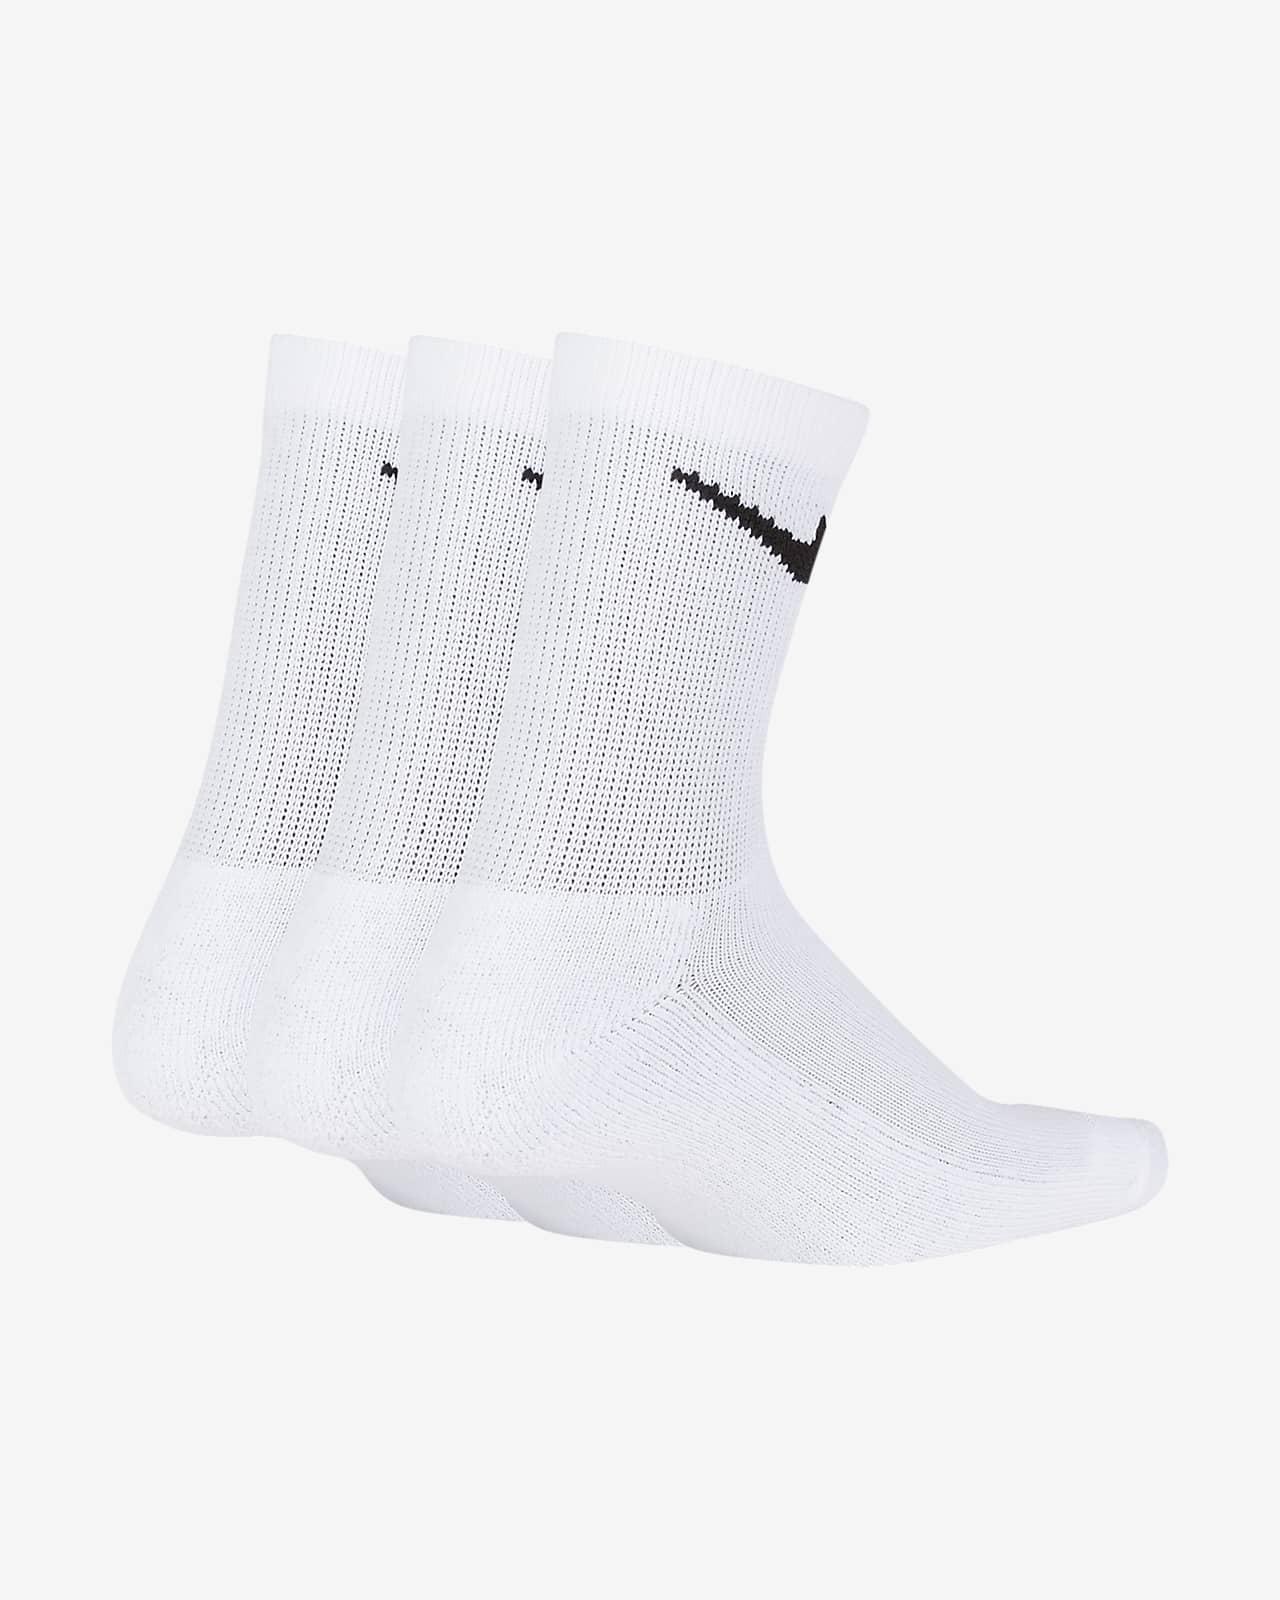 youth white nike socks